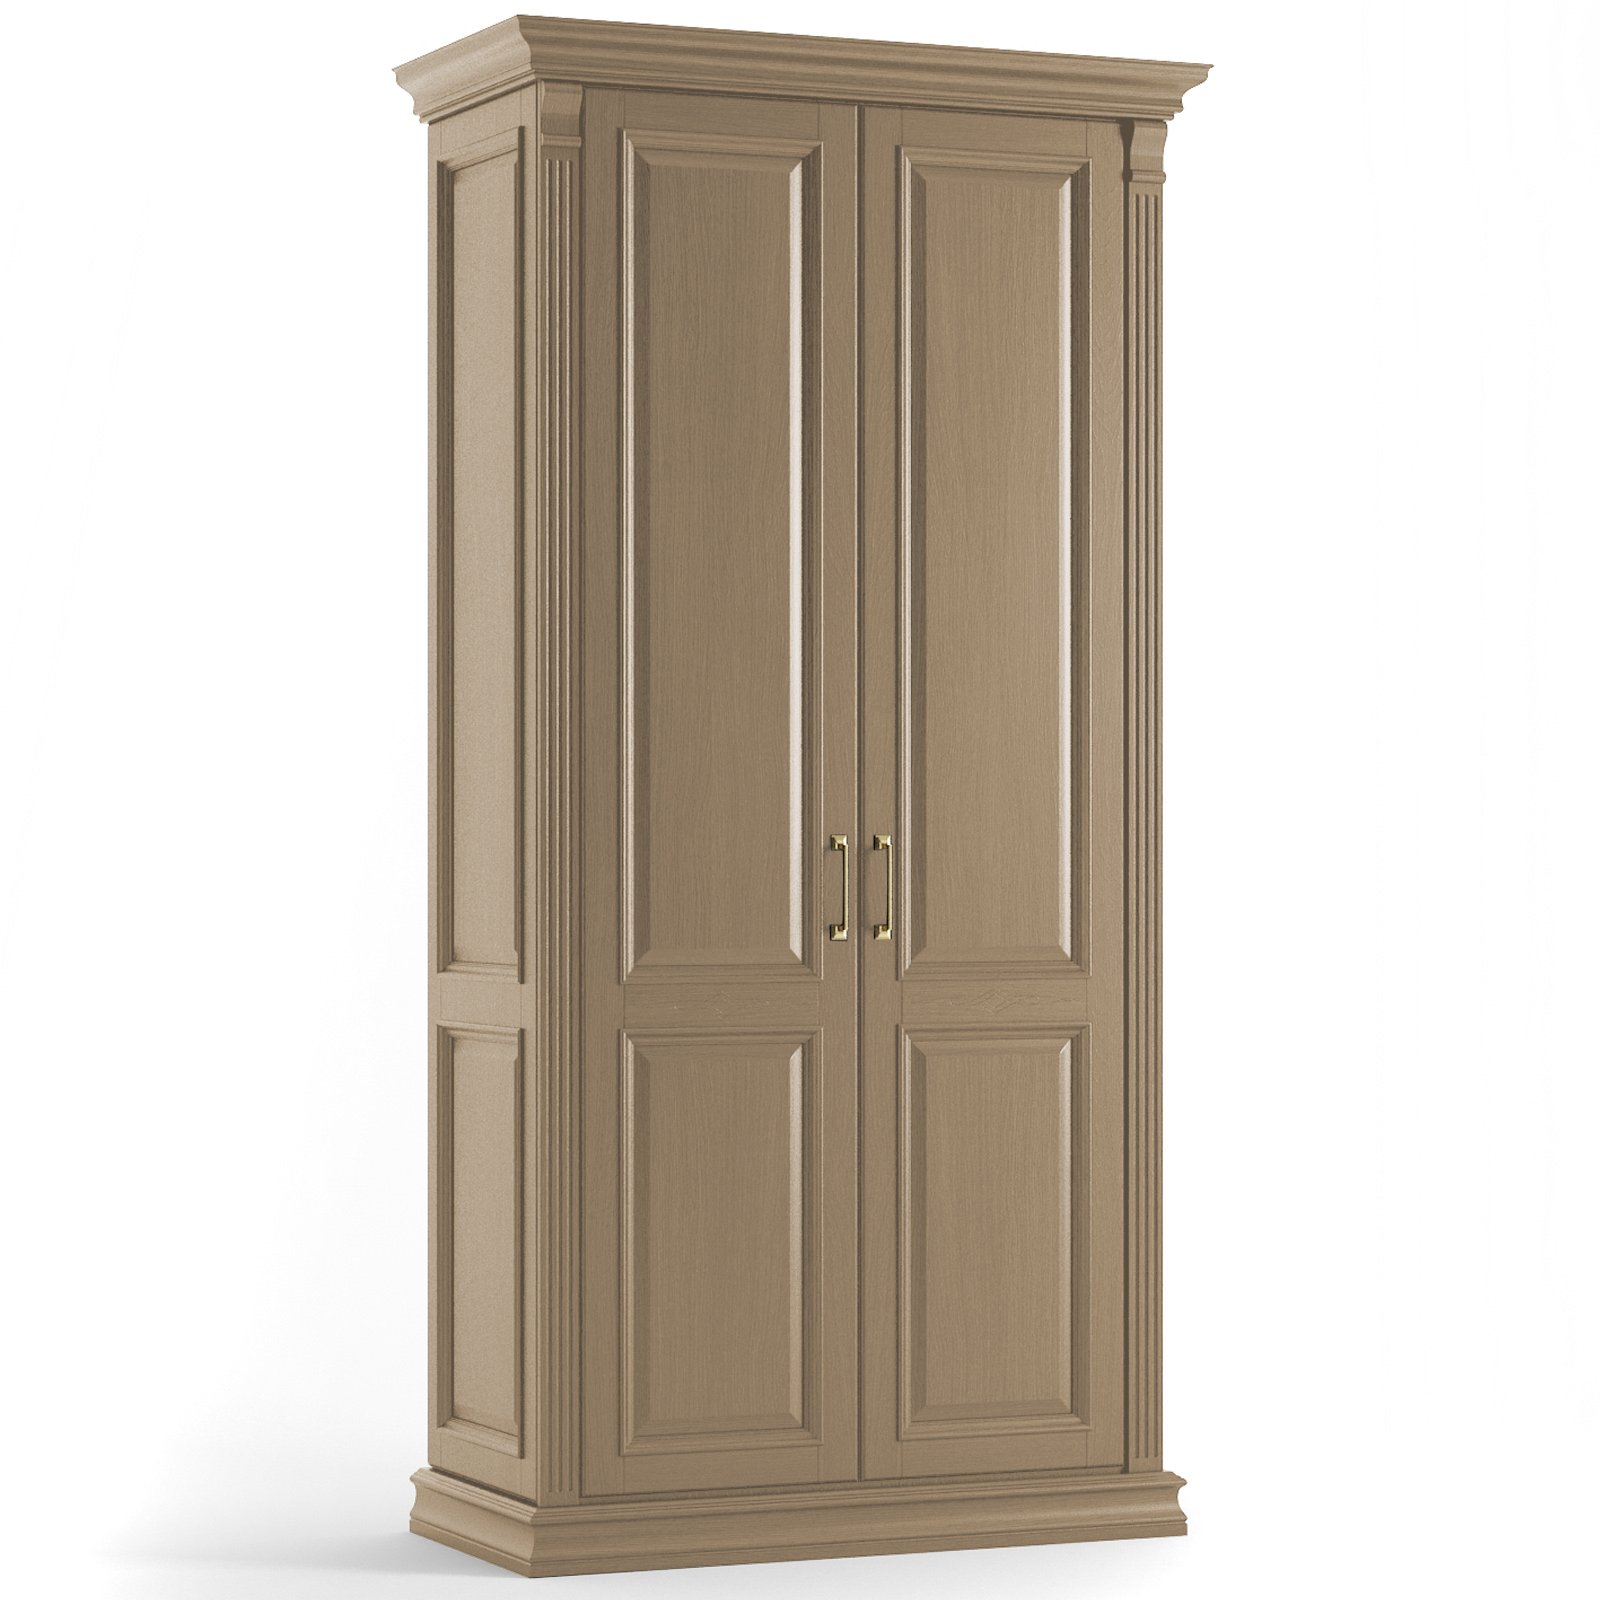 Шкаф платяной SDK Home Rimar двухдверный, цвет: пастель (RM.P02.102х64.U.P)RM.P02.102х64.U.P